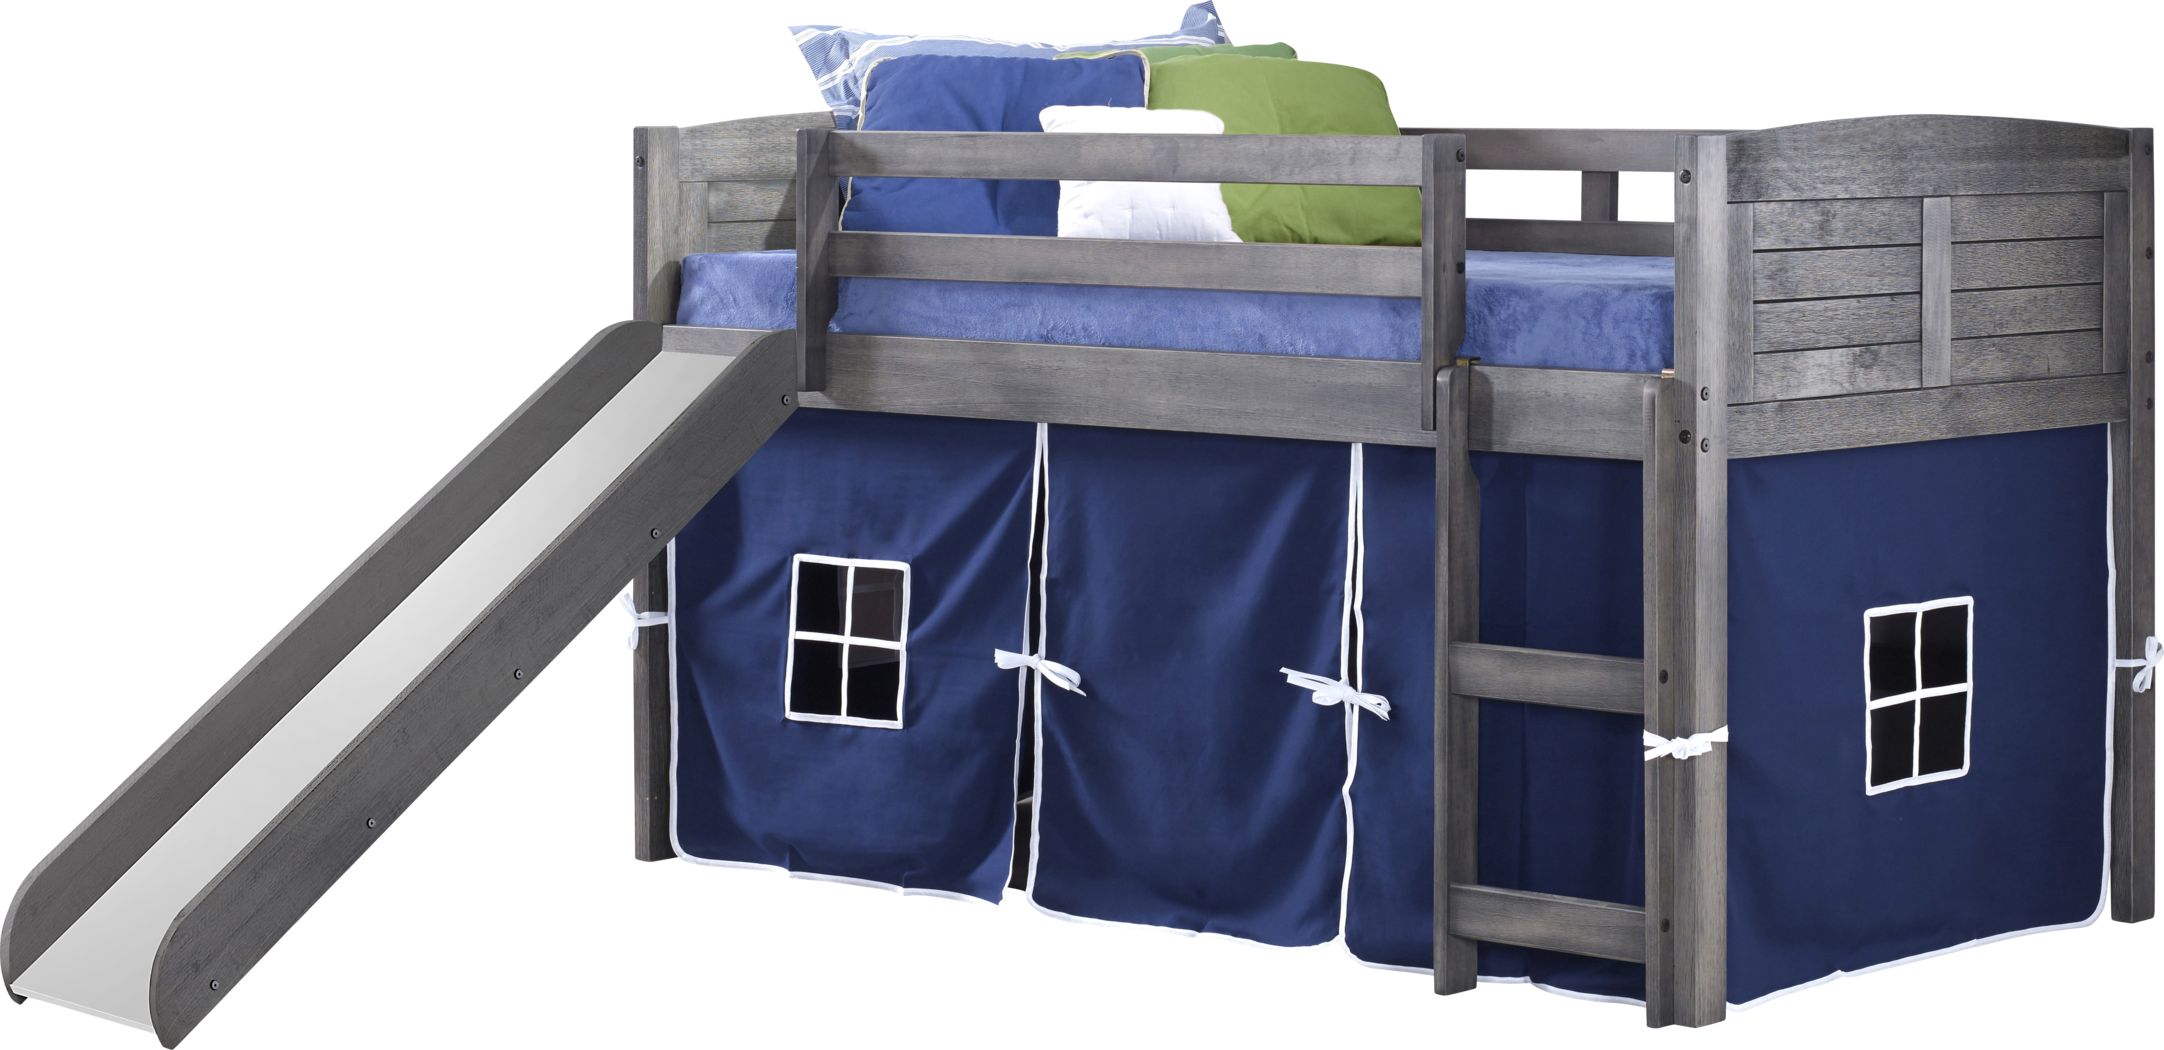 Loft Beds With Slide Underneath, Bunk Bed Slide Sold Separately